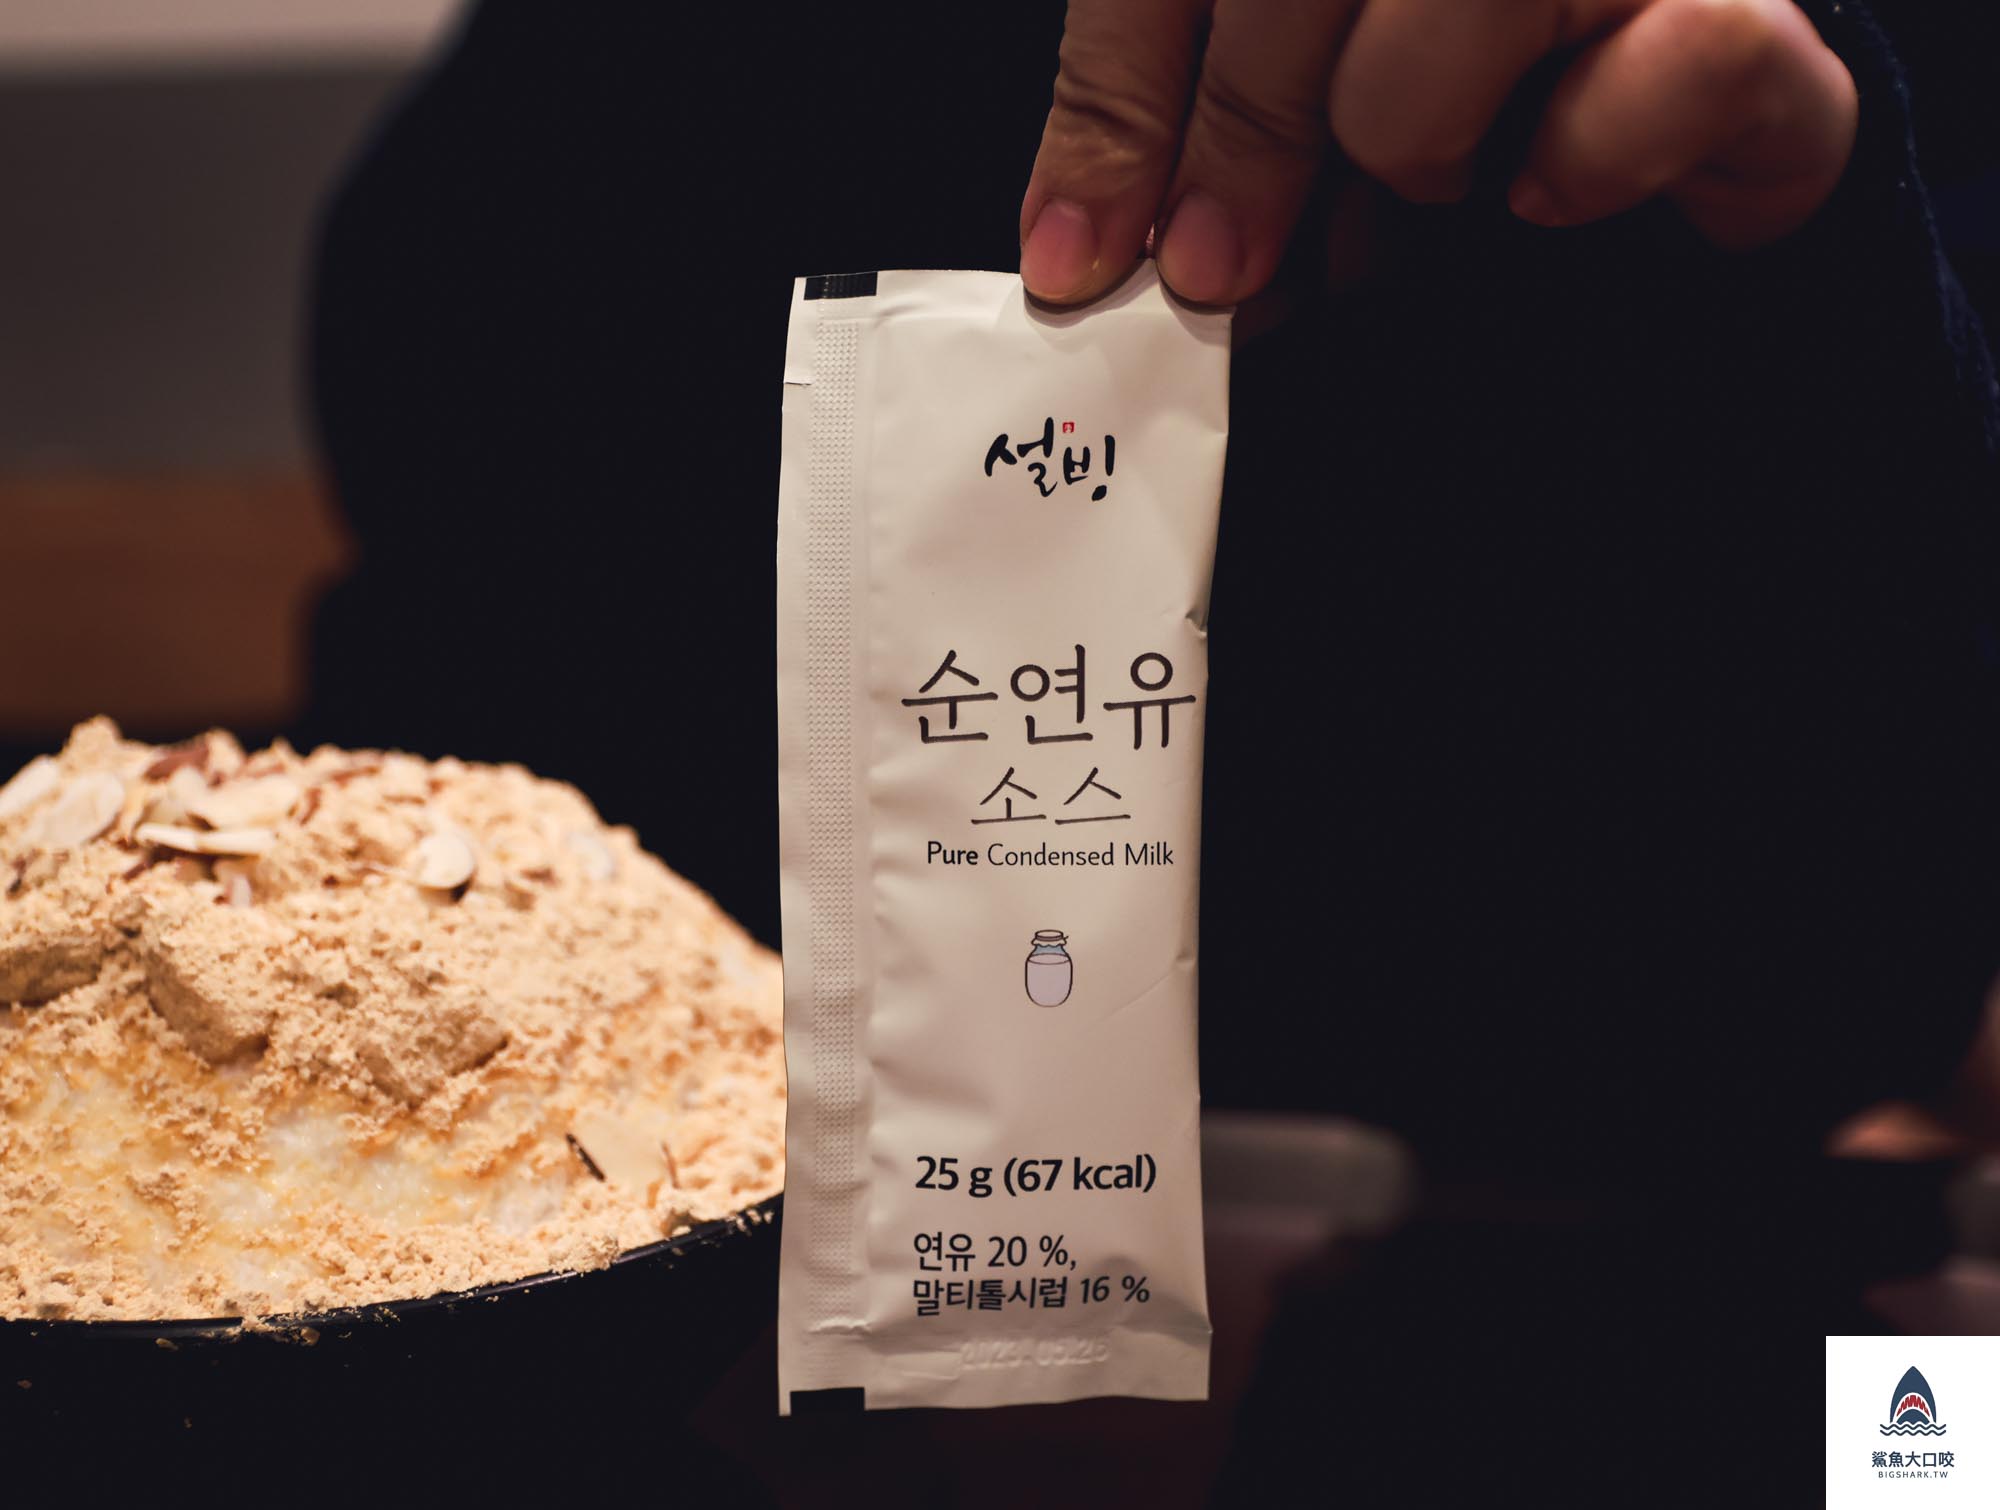 韓國美食推薦,韓國甜點推薦,韓國冰品推薦,韓國咖啡廳,韓國雪冰,首爾雪冰 @鯊魚大口咬